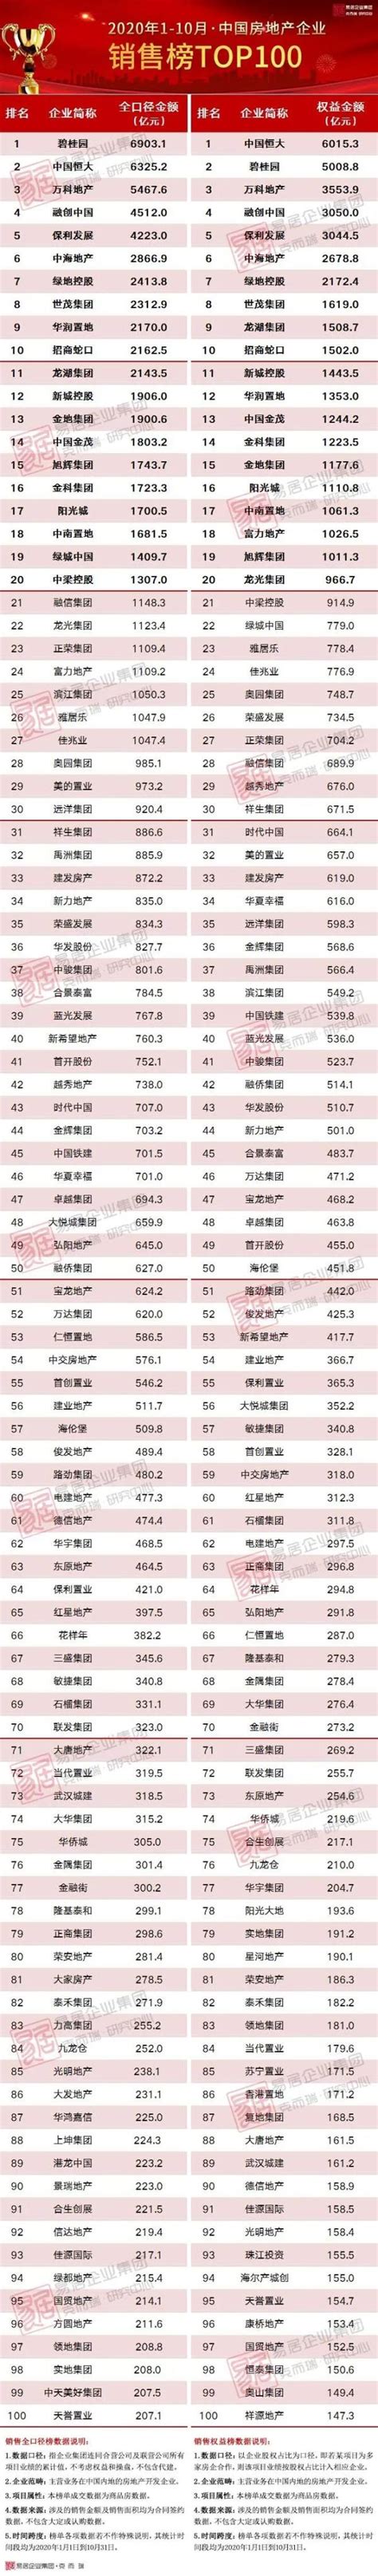 [克而瑞]2020年1-10月中国房地产企业销售TOP100排行榜_中房网_中国房地产业协会官方网站